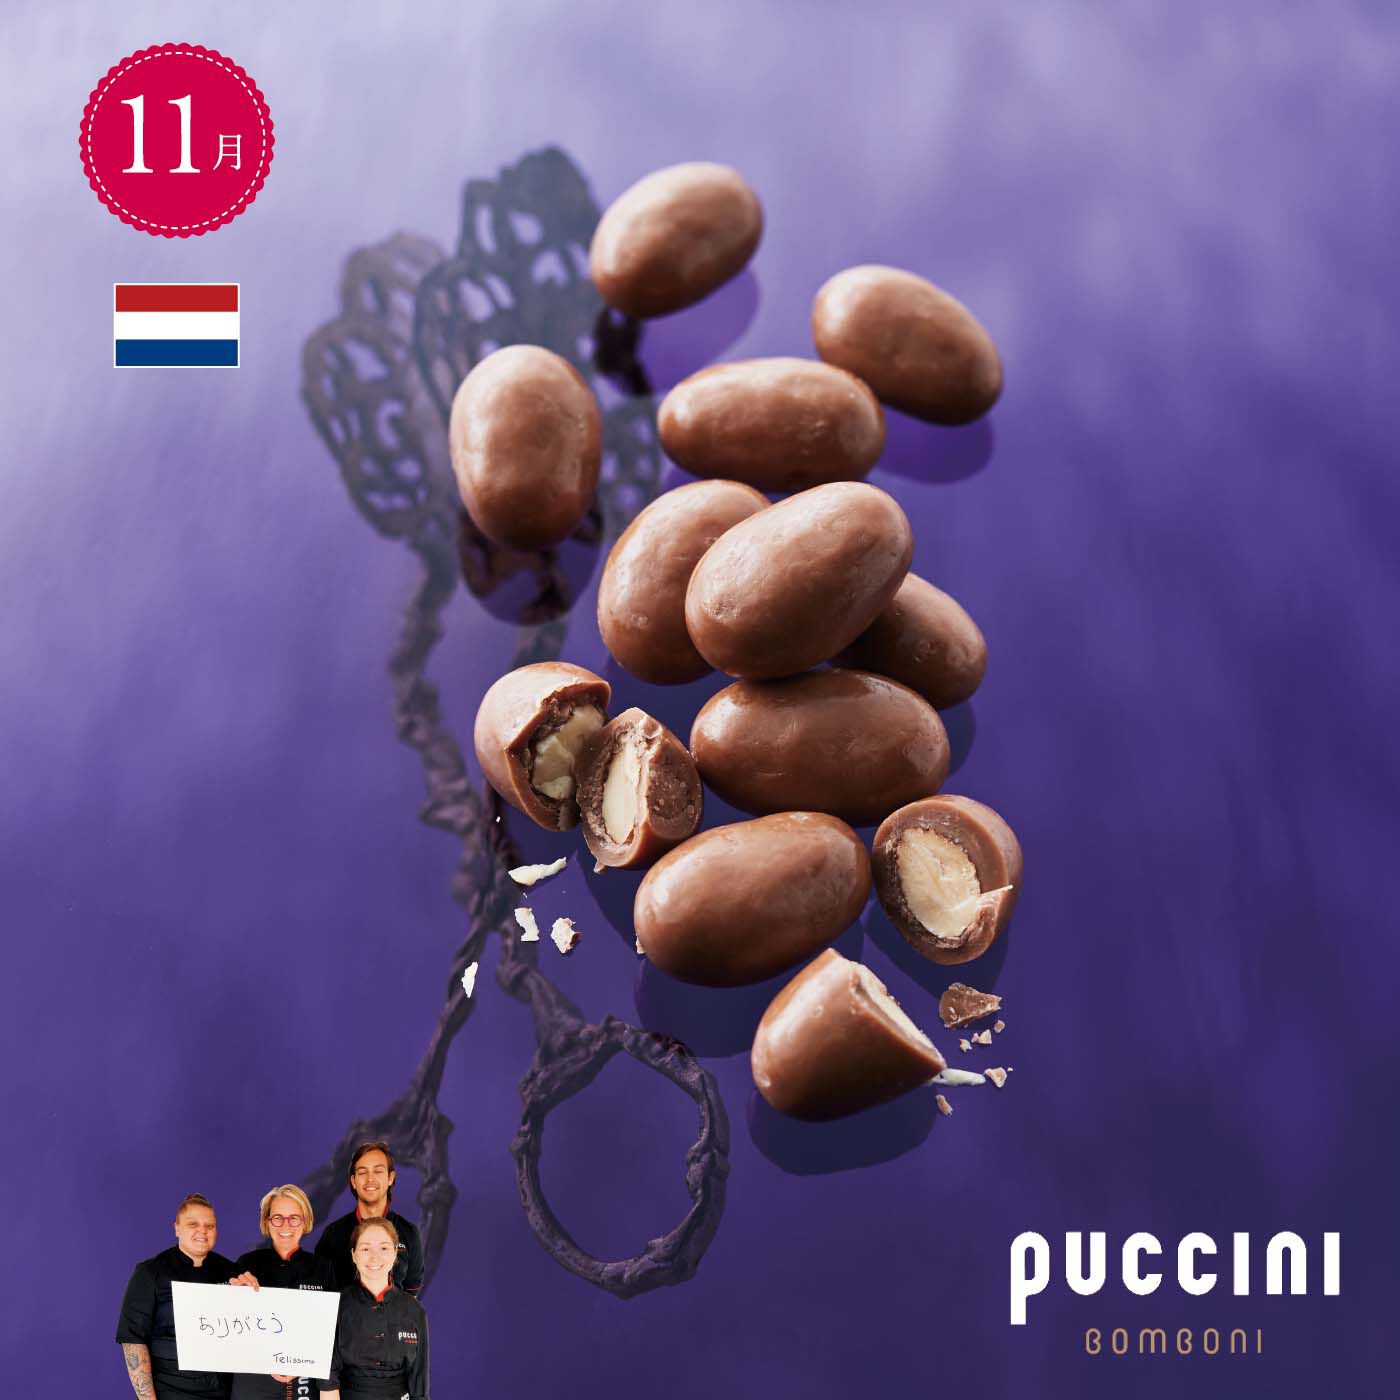 幸福のチョコレート|幸福のチョコレート メンバーサロン　シルバーメンバーコース 〈12ヵ月コース〉|【11月】オランダ 〈プッチーニ ボンボーニ〉